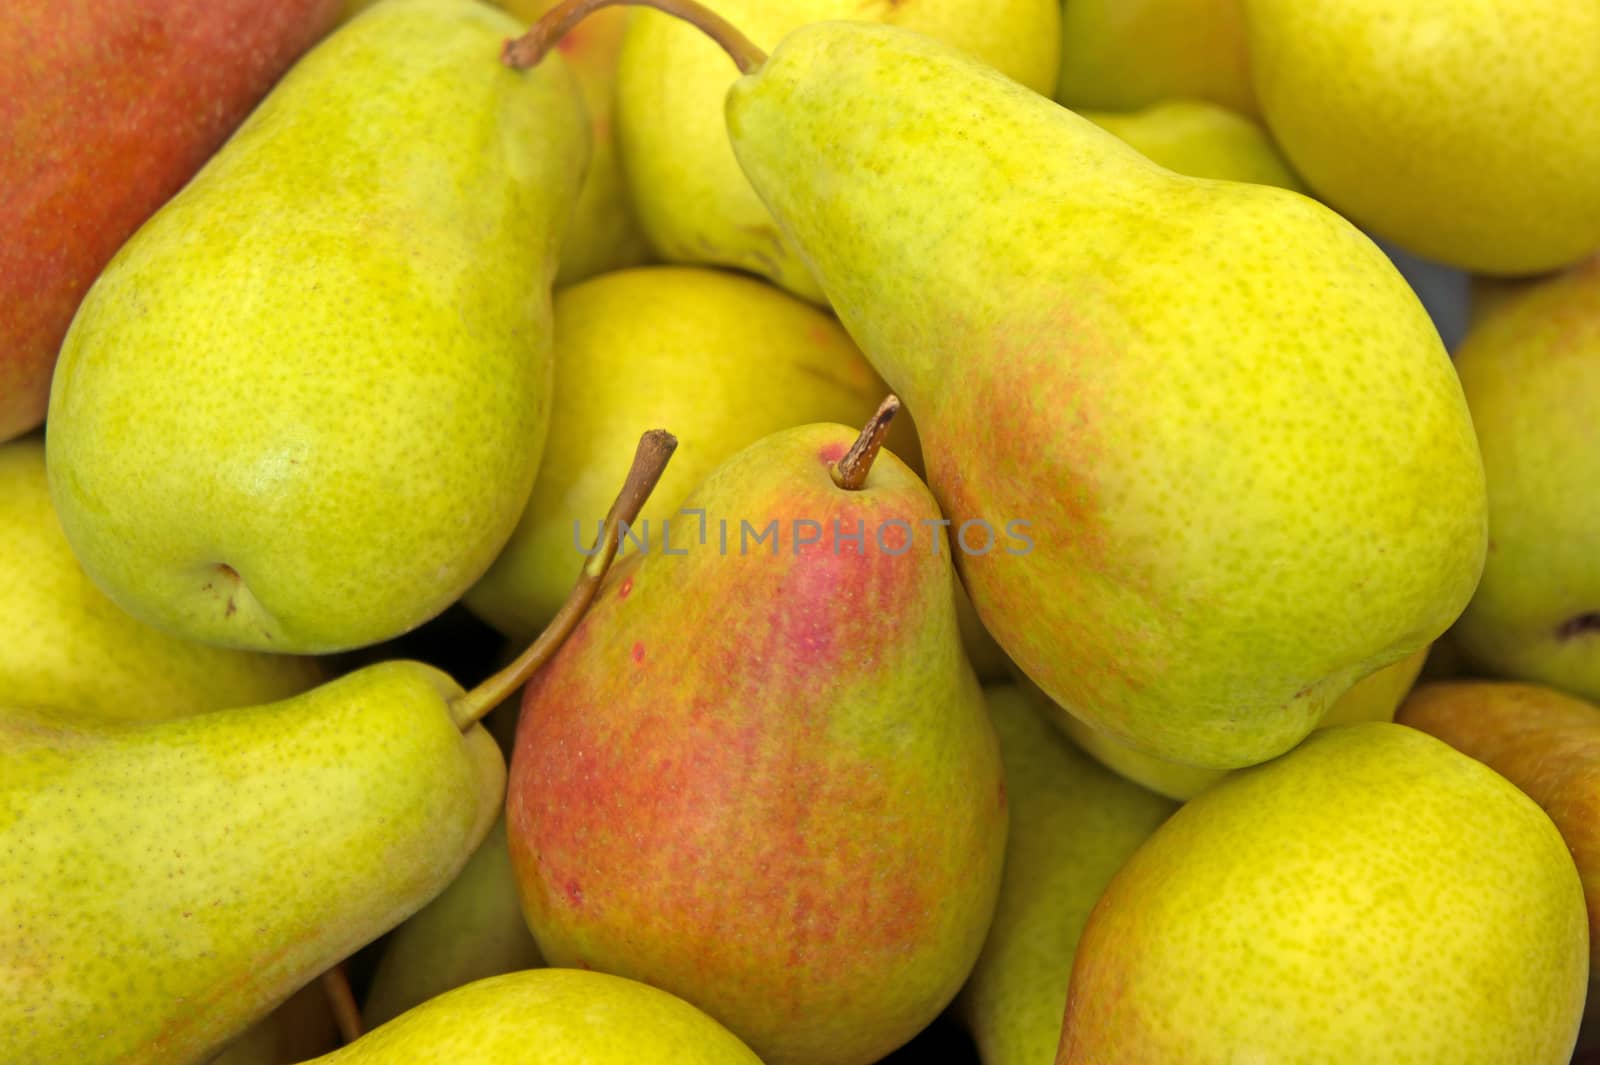 Heap of ripe sweet pears in the market